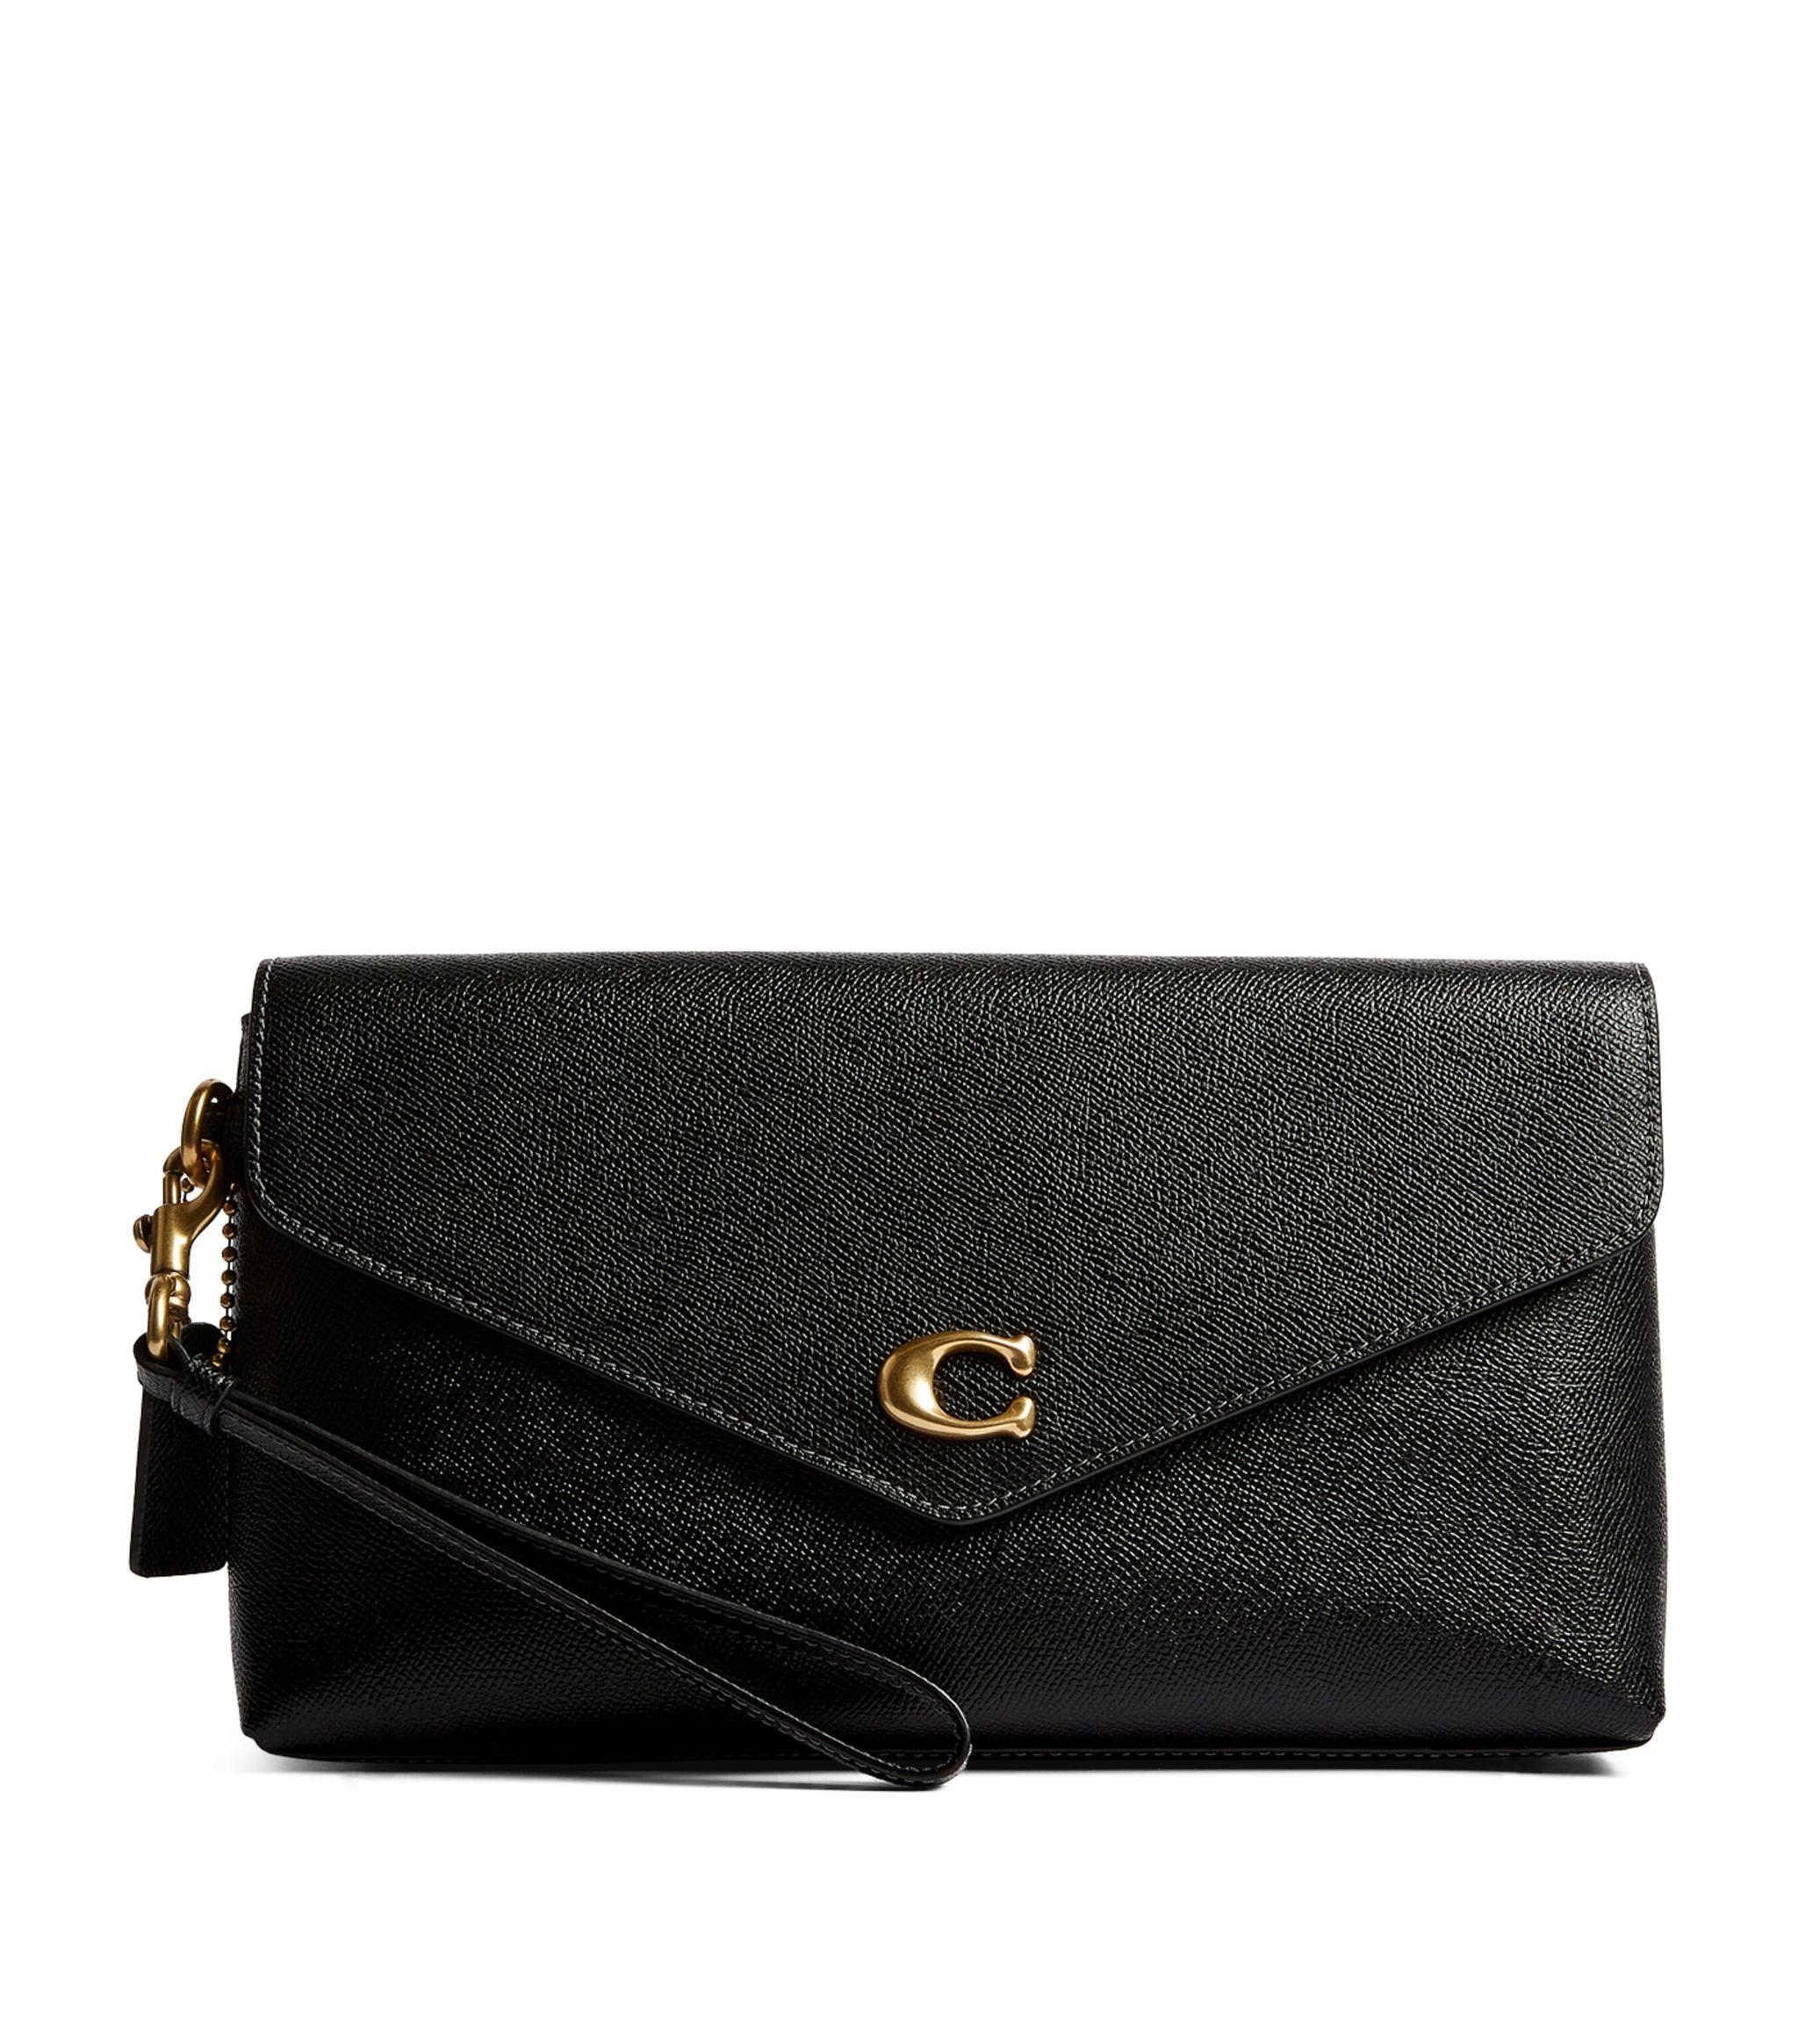 COACH Leather Wyn Clutch Bag in Black | Lyst UK